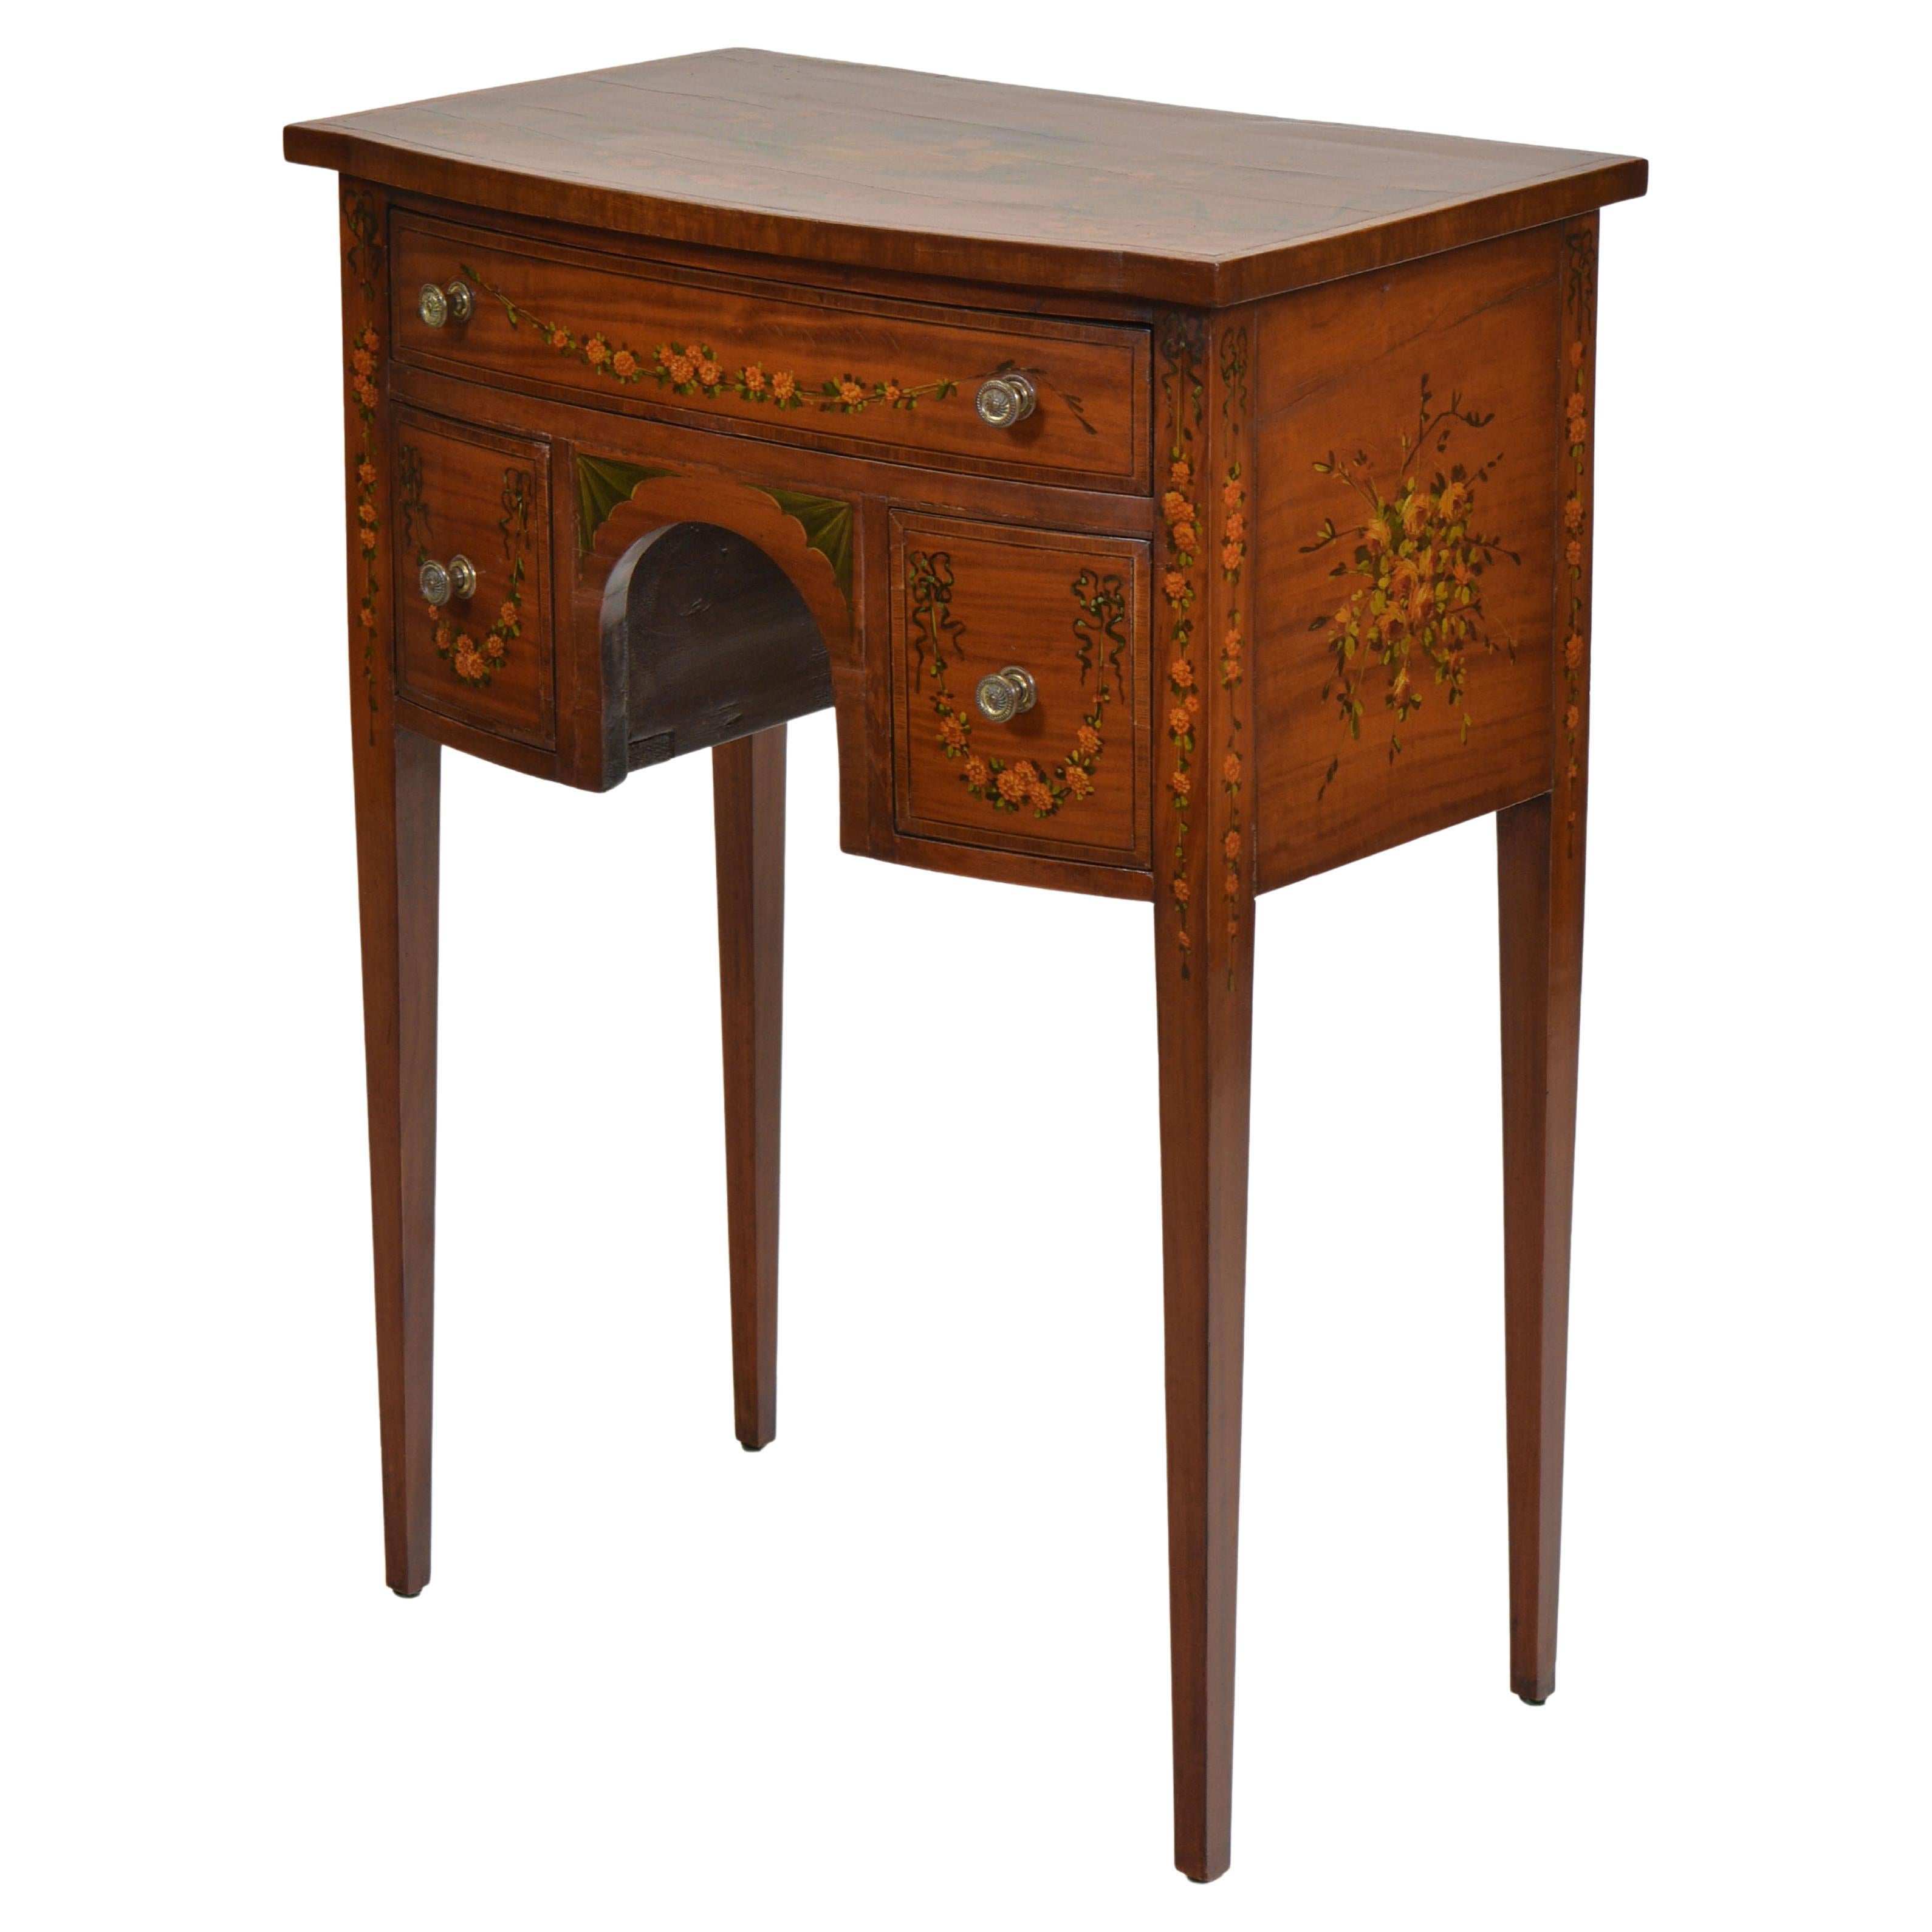 Petite table d'appoint en bois satiné peint de style Edwardien Sheraton Revival